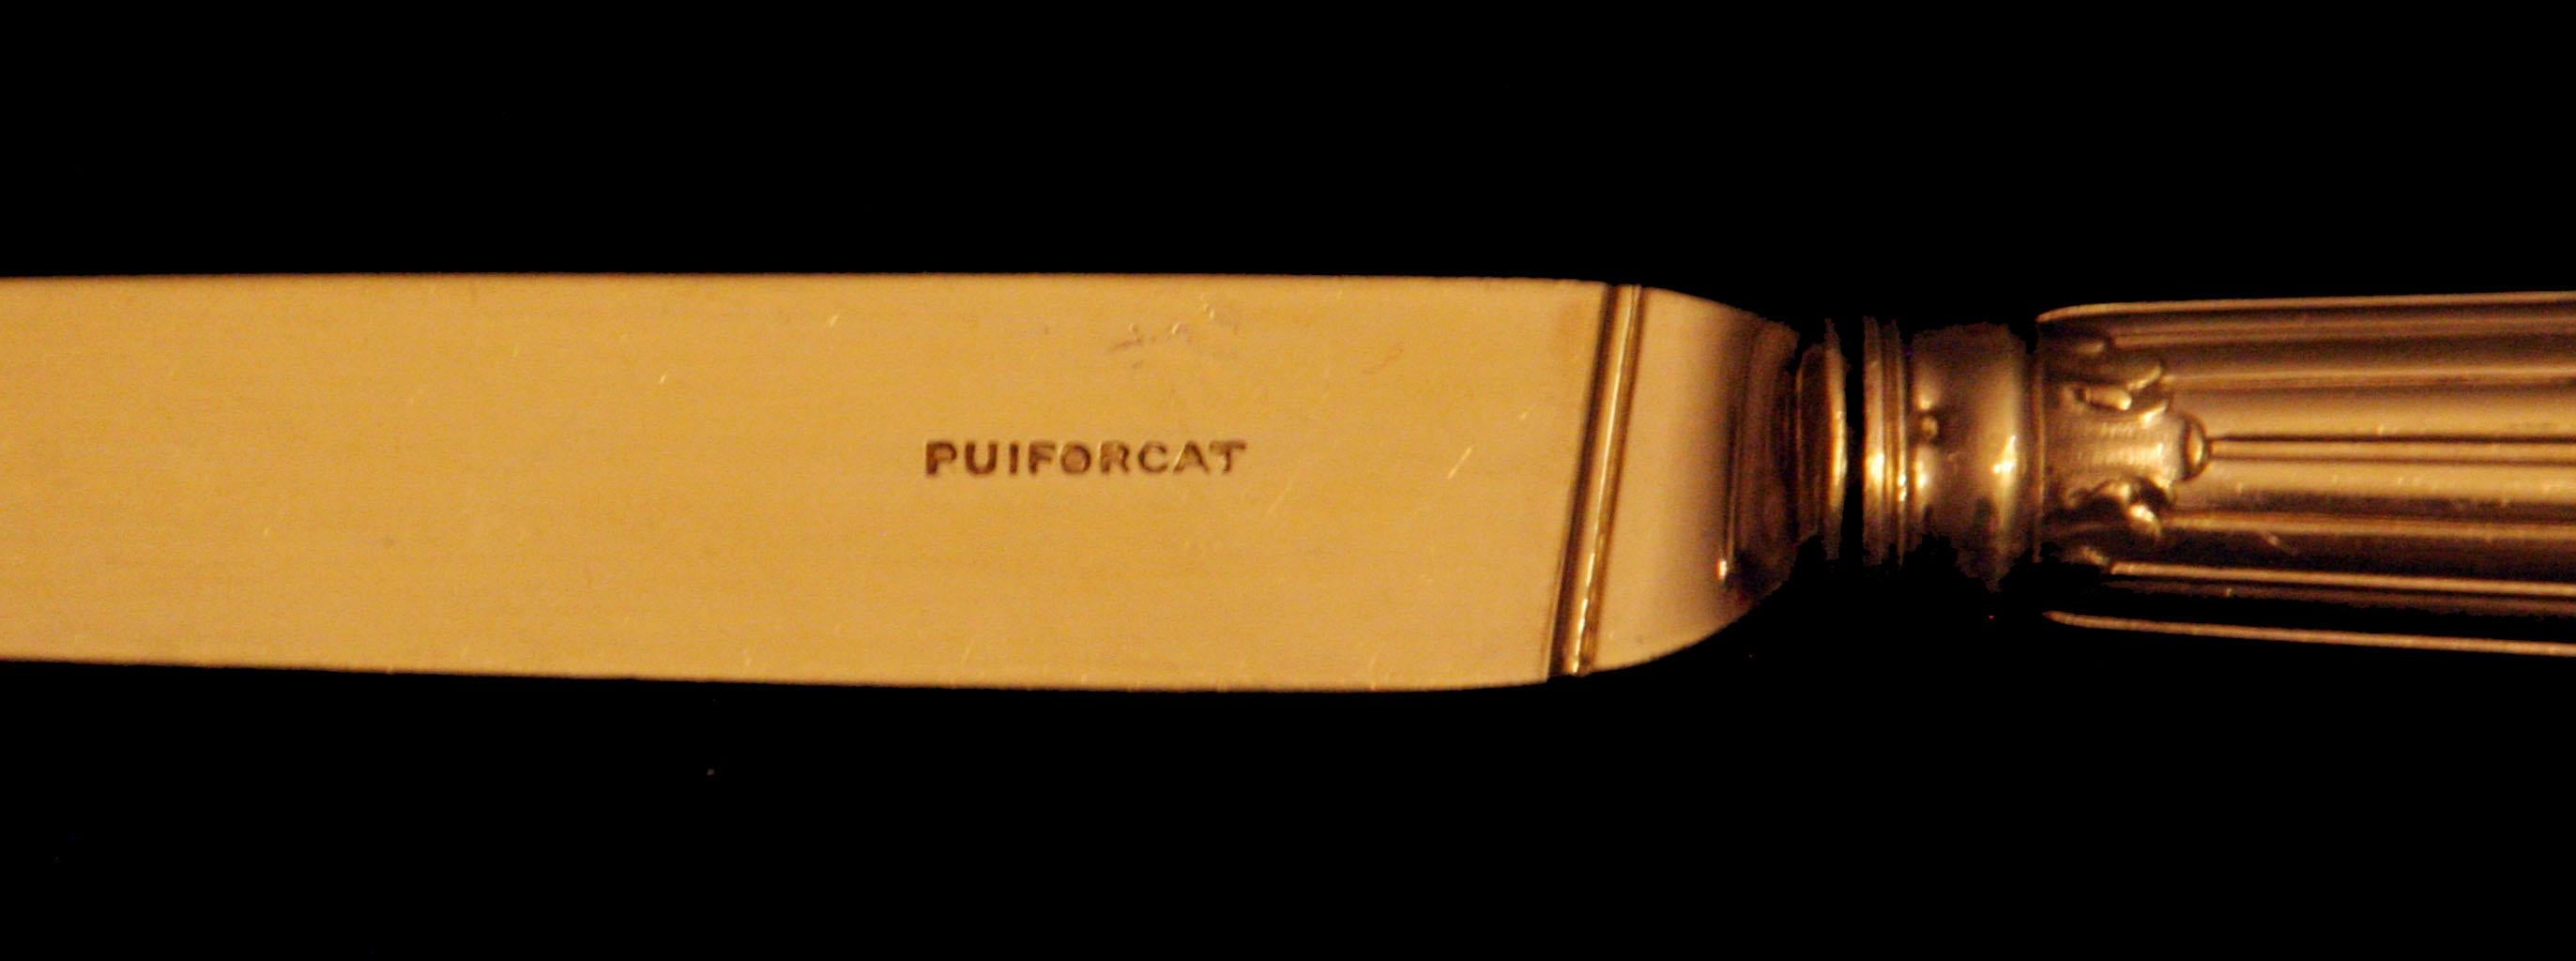 Puiforcat (Hermes) - 246pc 950 Sterling Silver & Vermeil Flatware Set + Chest ! For Sale 5